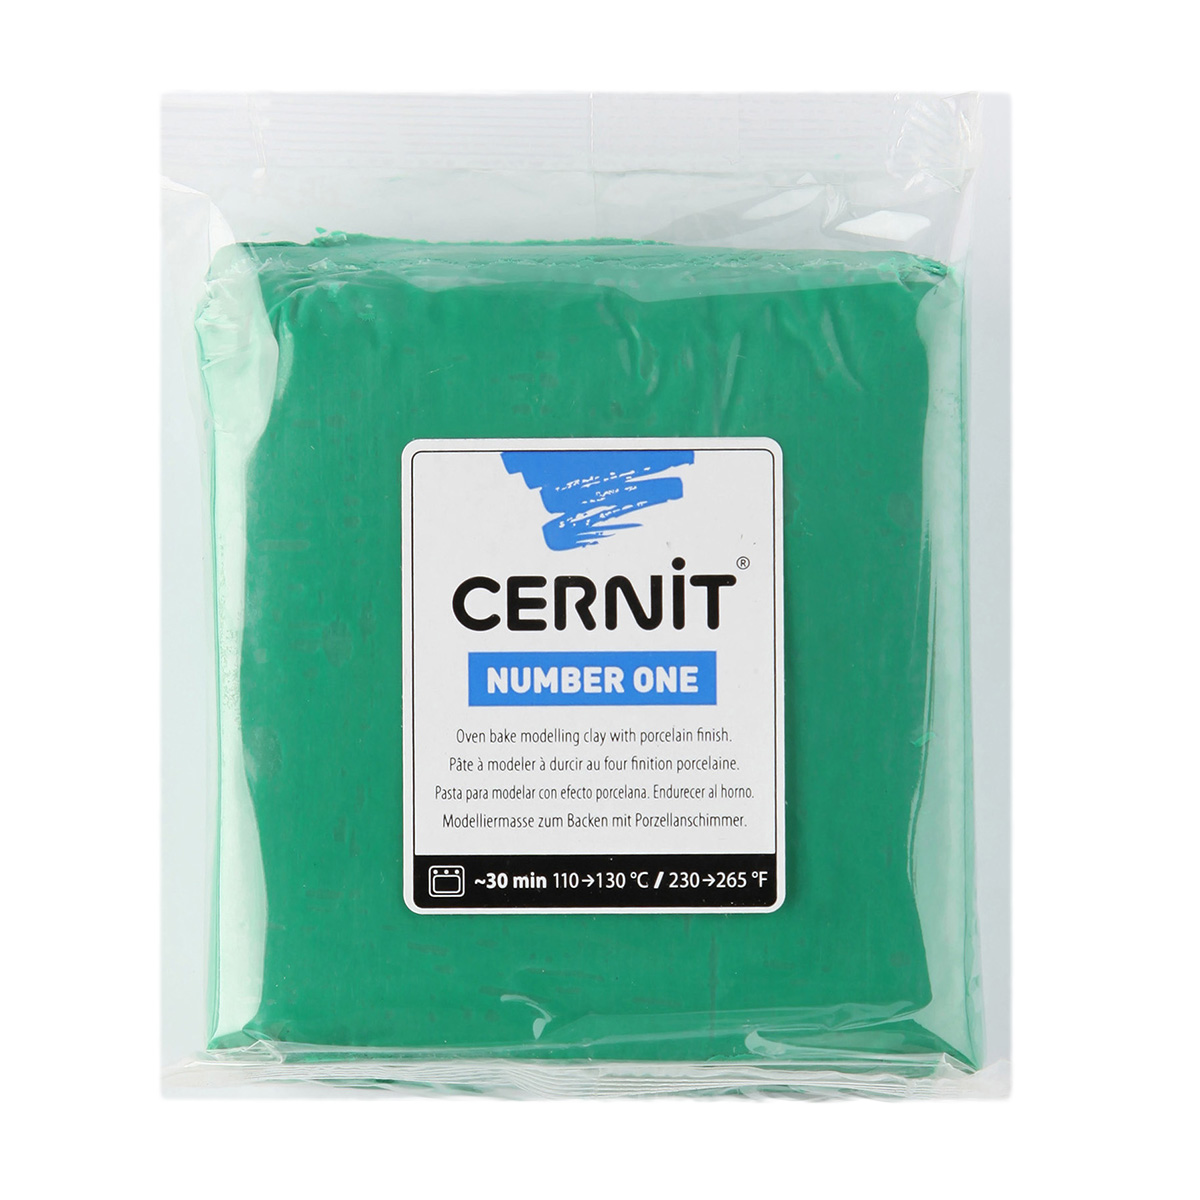 Пластика полимерная Cernit №1, CE090025, 250 г (600 зеленый)